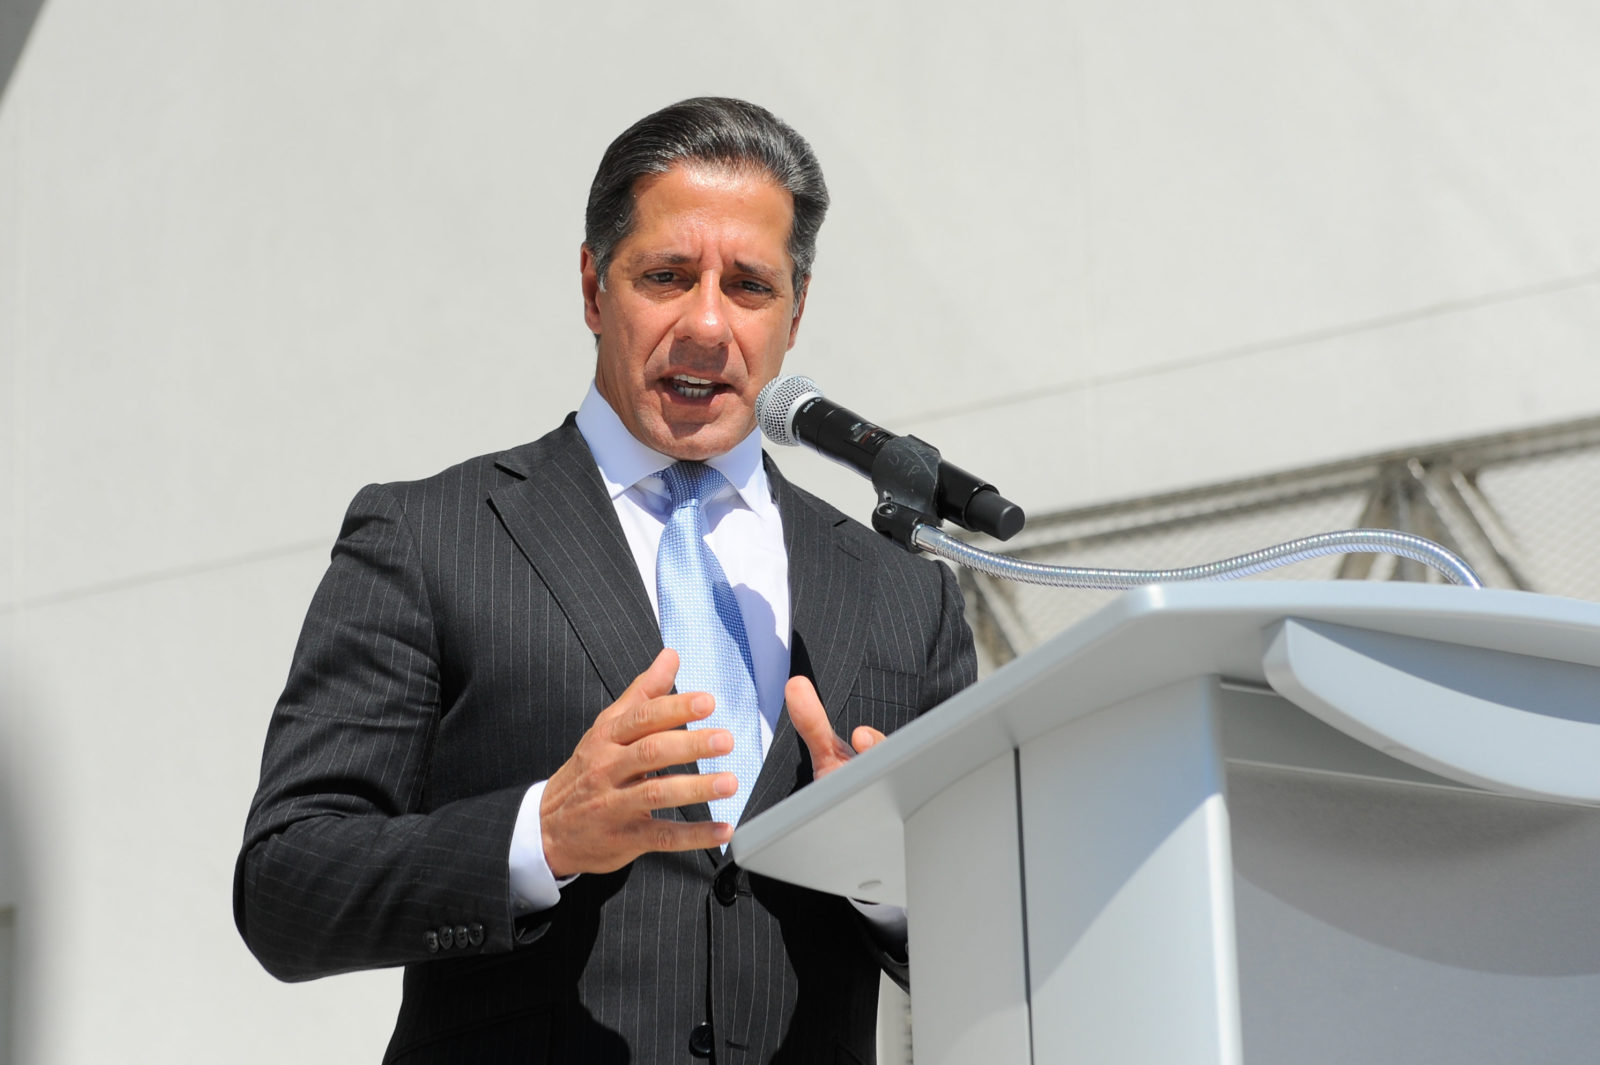 El superintendente de Miami-Dade se defiende de las acusaciones sobre la donación anónima